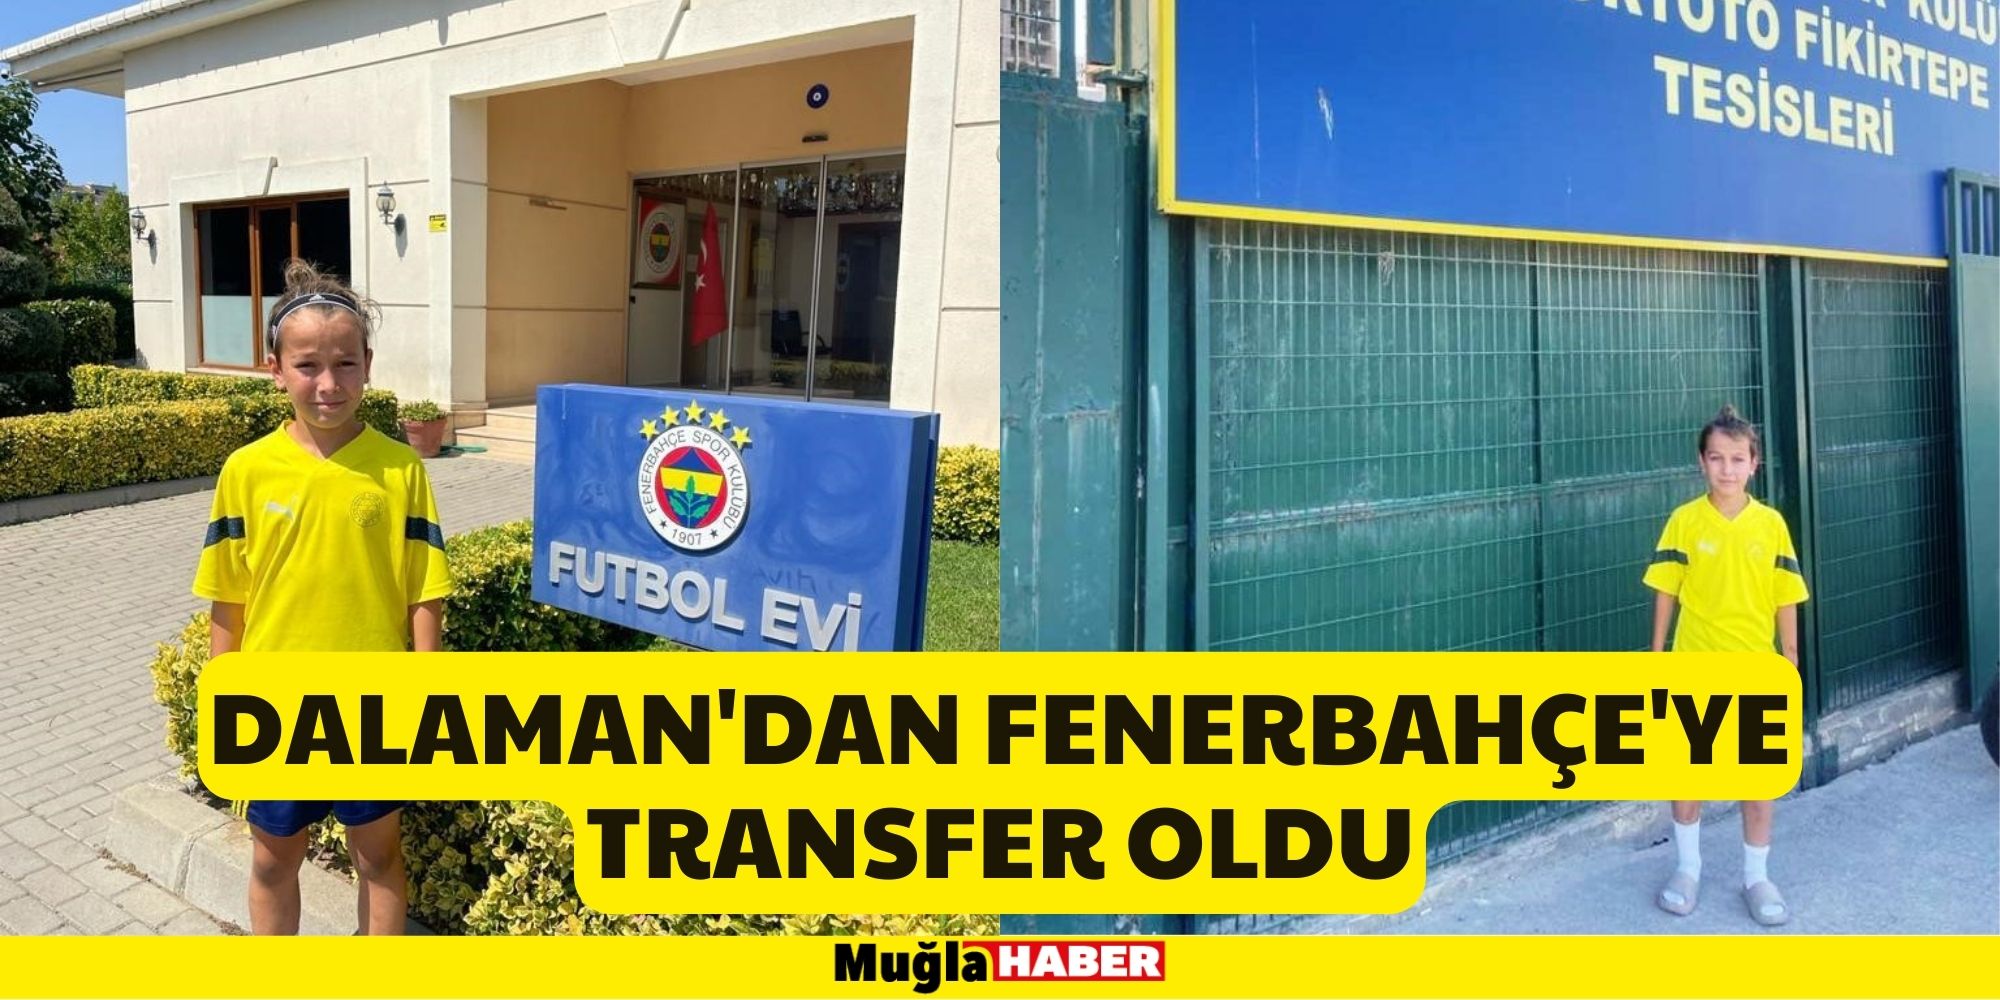 Dalaman'dan Fenerbahçe'ye Transfer Oldu